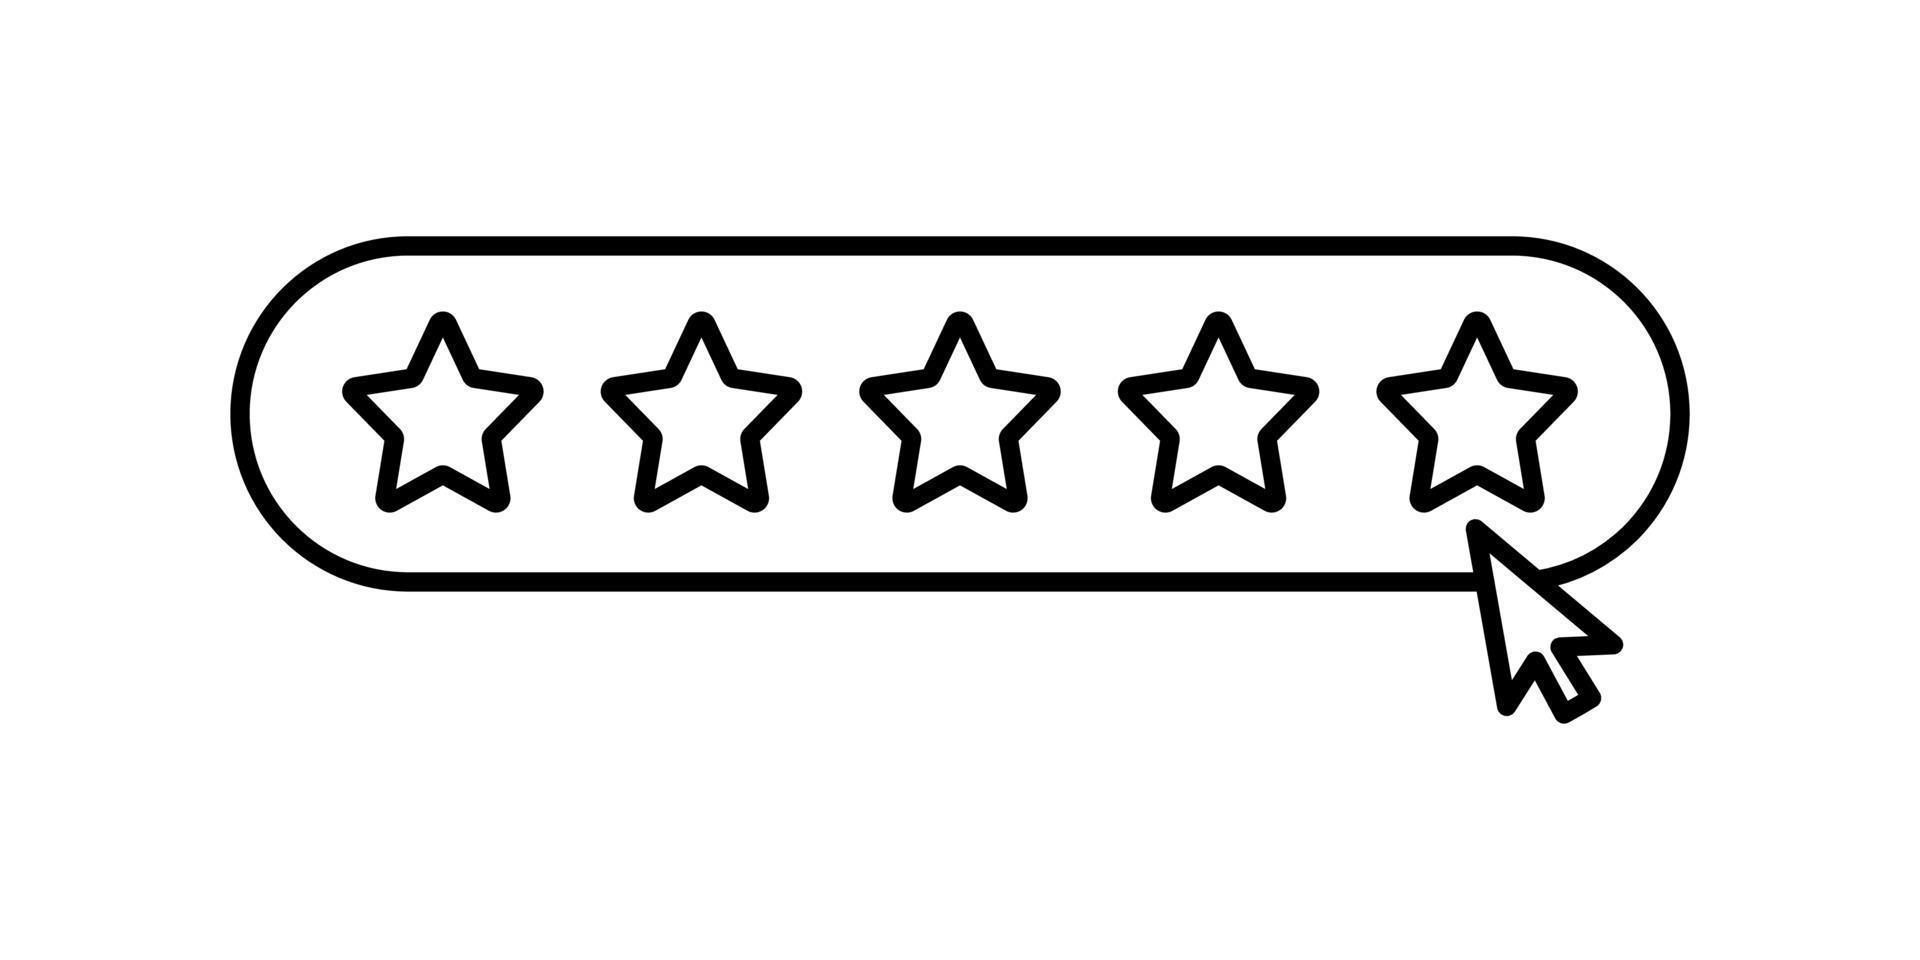 calificación de cinco estrellas, califíquenos cinco estrellas, icono de concepto de retroalimentación en el diseño de estilo de línea aislado en fondo blanco. trazo editable. vector